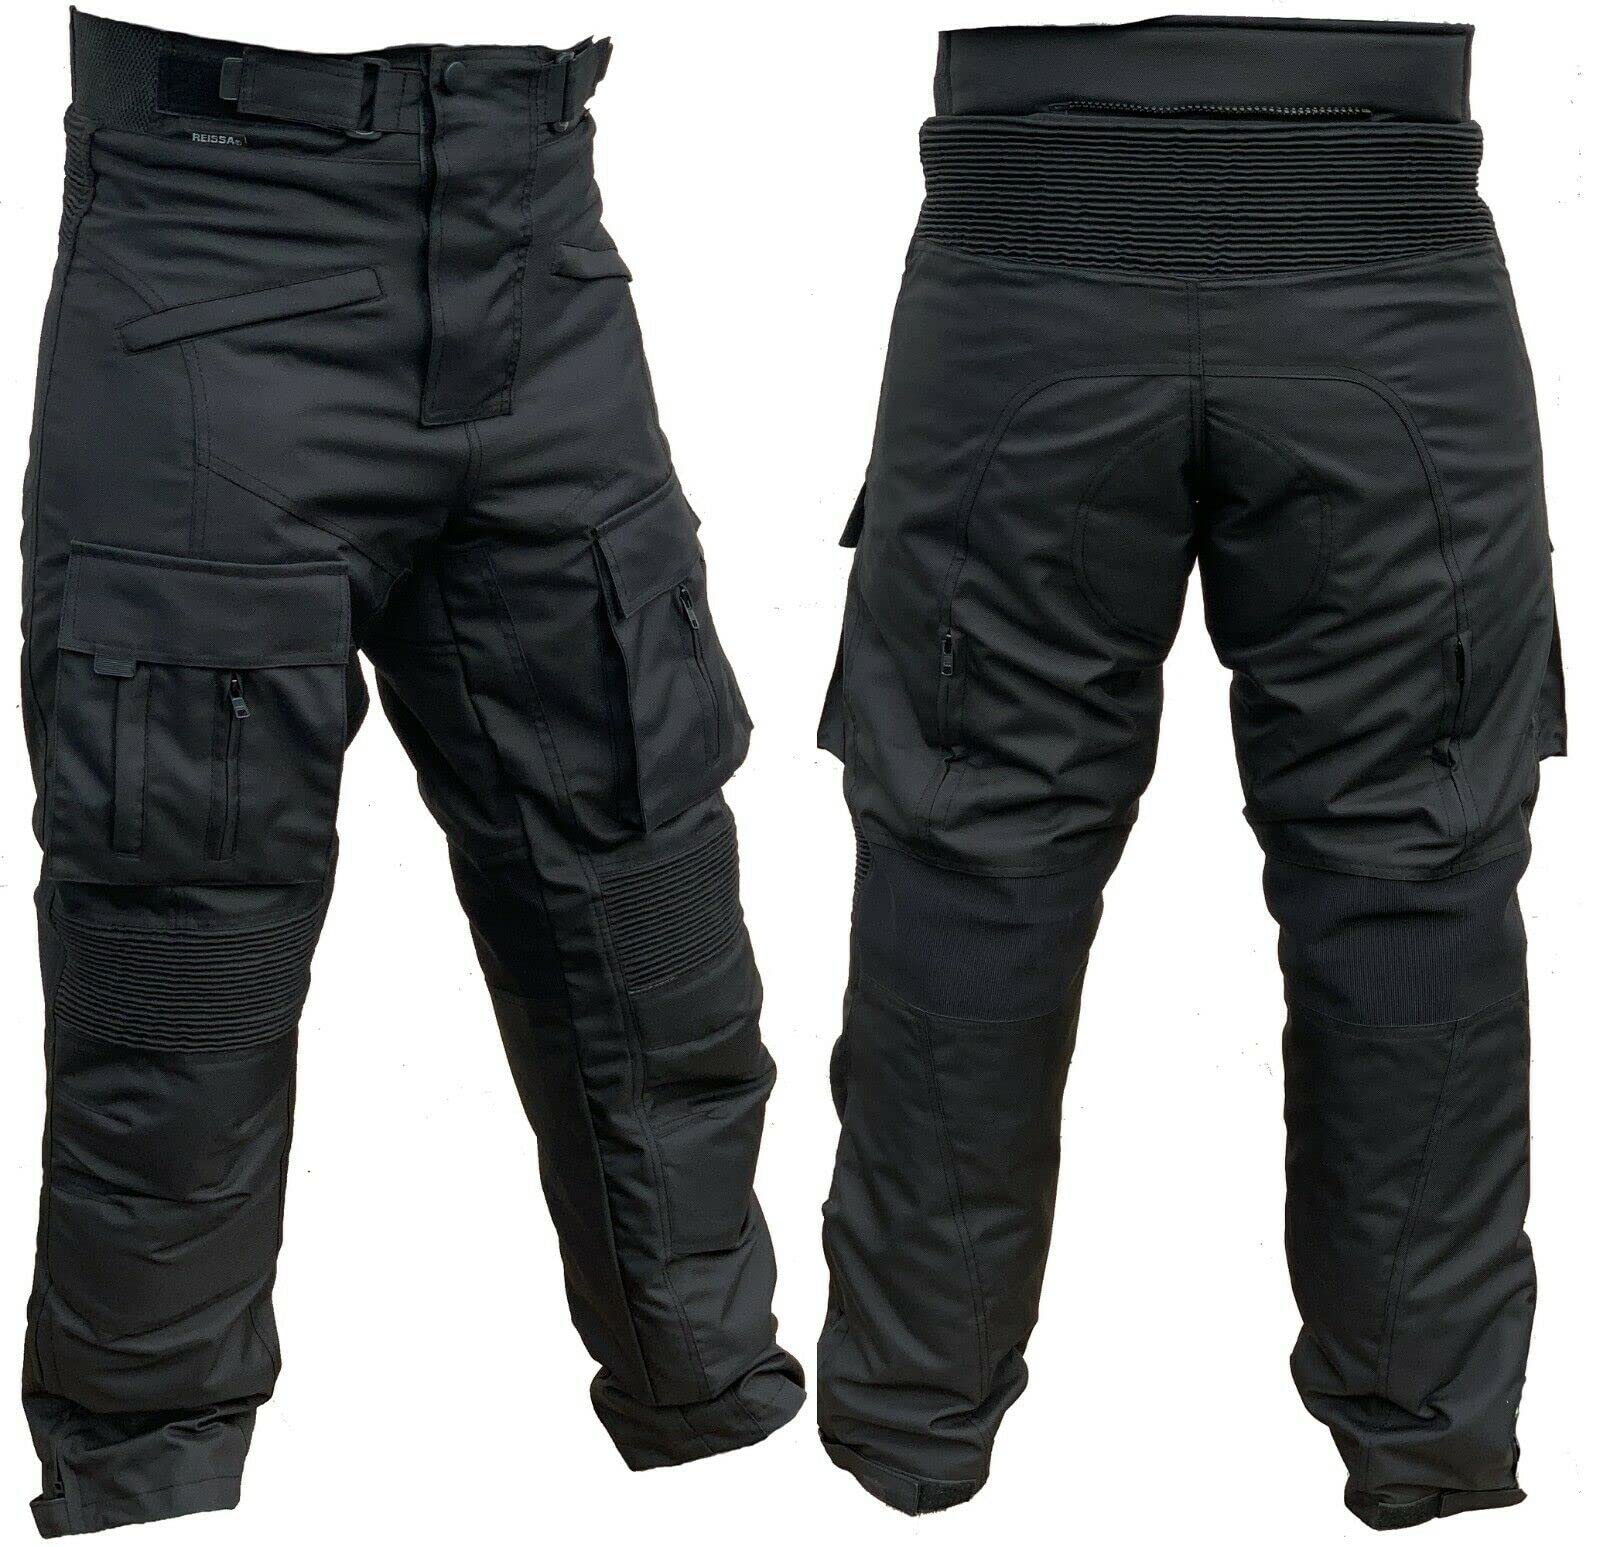 L&J Motorradhose mit herausnehmbaren Protektoren an Hüfte und Knie Herren Textil Motorrad Hose (XL) von L&J